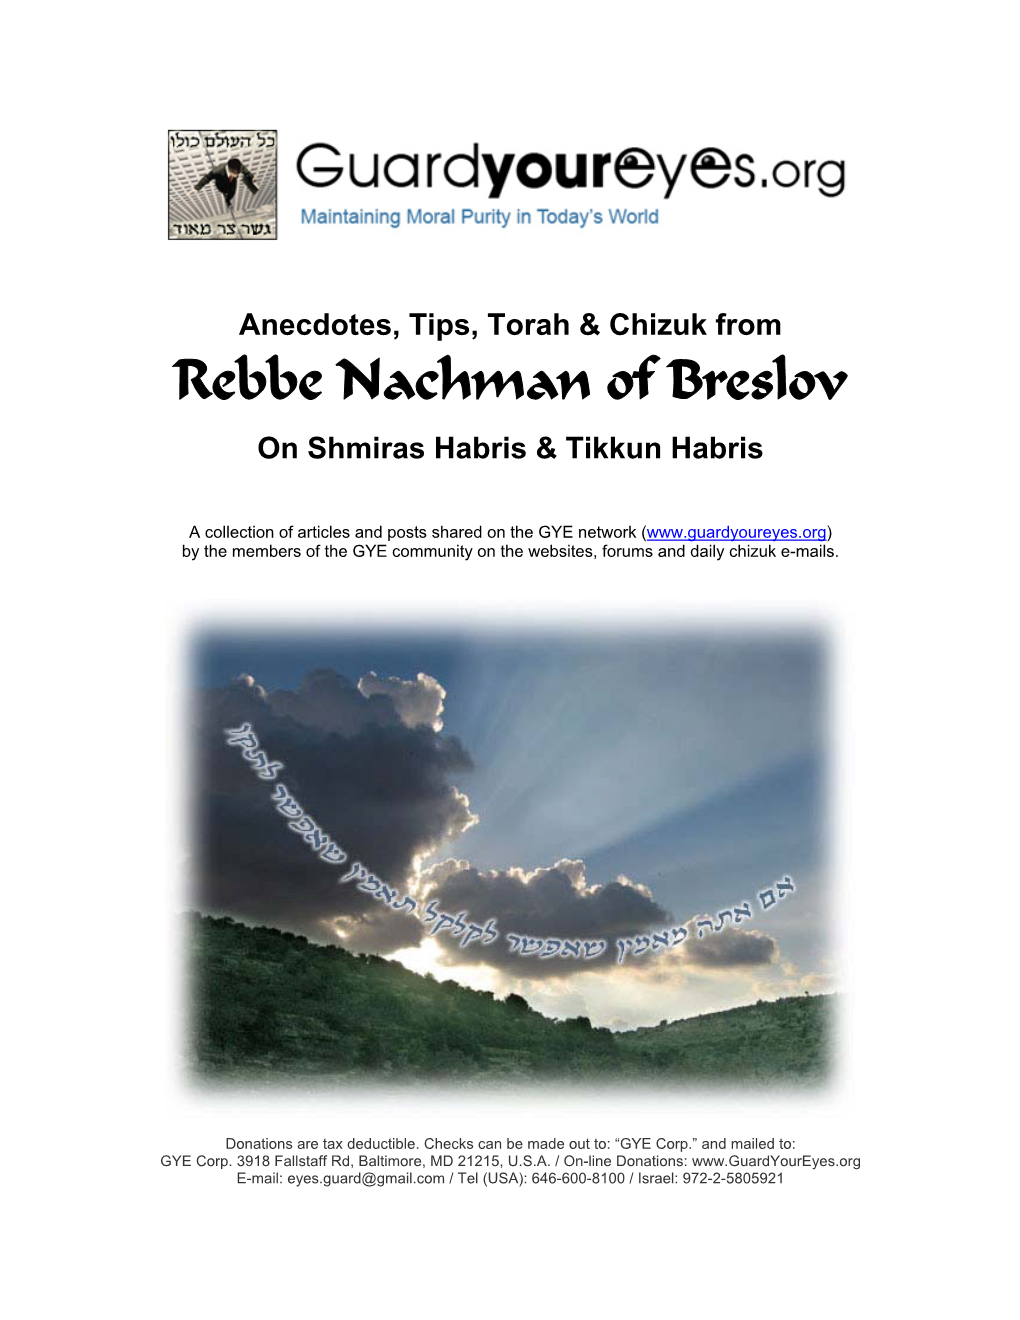 Rebbe Nachman of Breslov